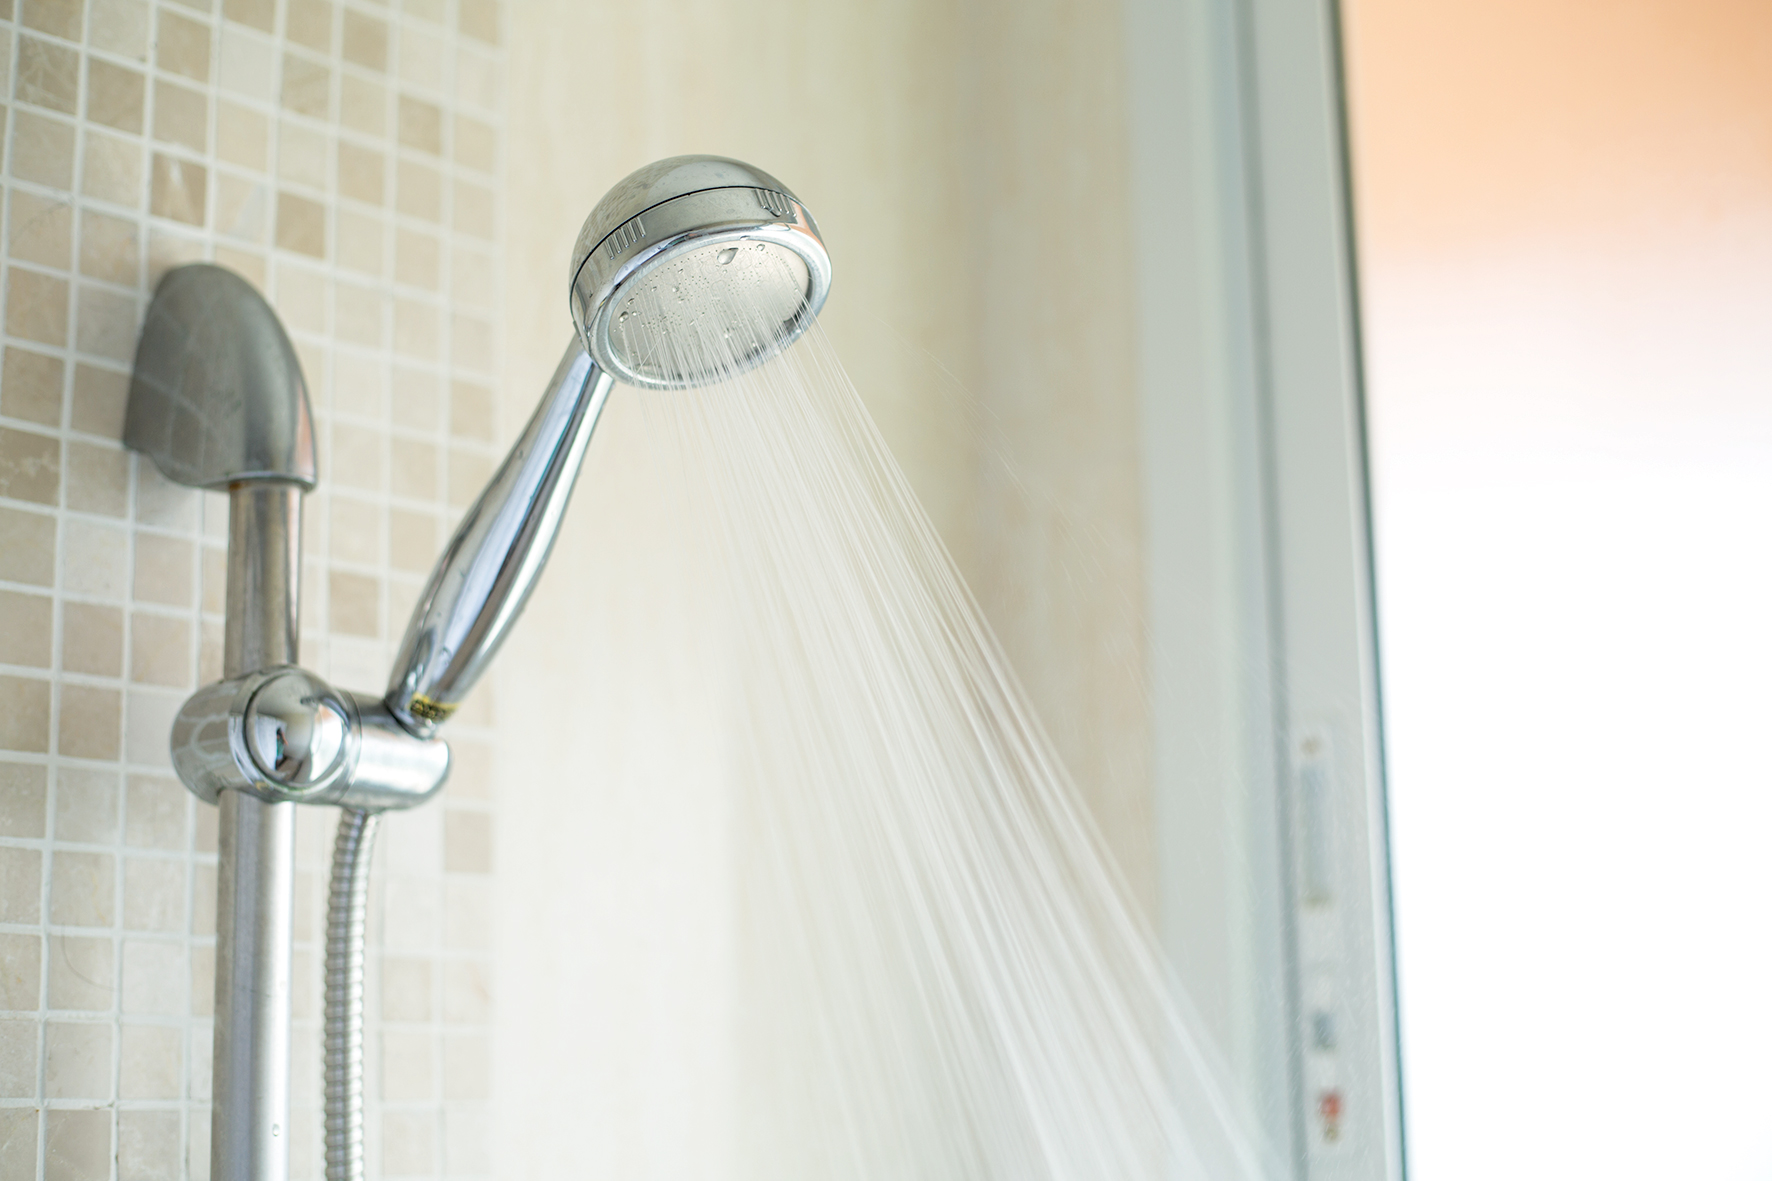 Výmena bežnej sprchovej hlavice za úspornú sprchovú hlavicu prinesie výraznú úsporu.